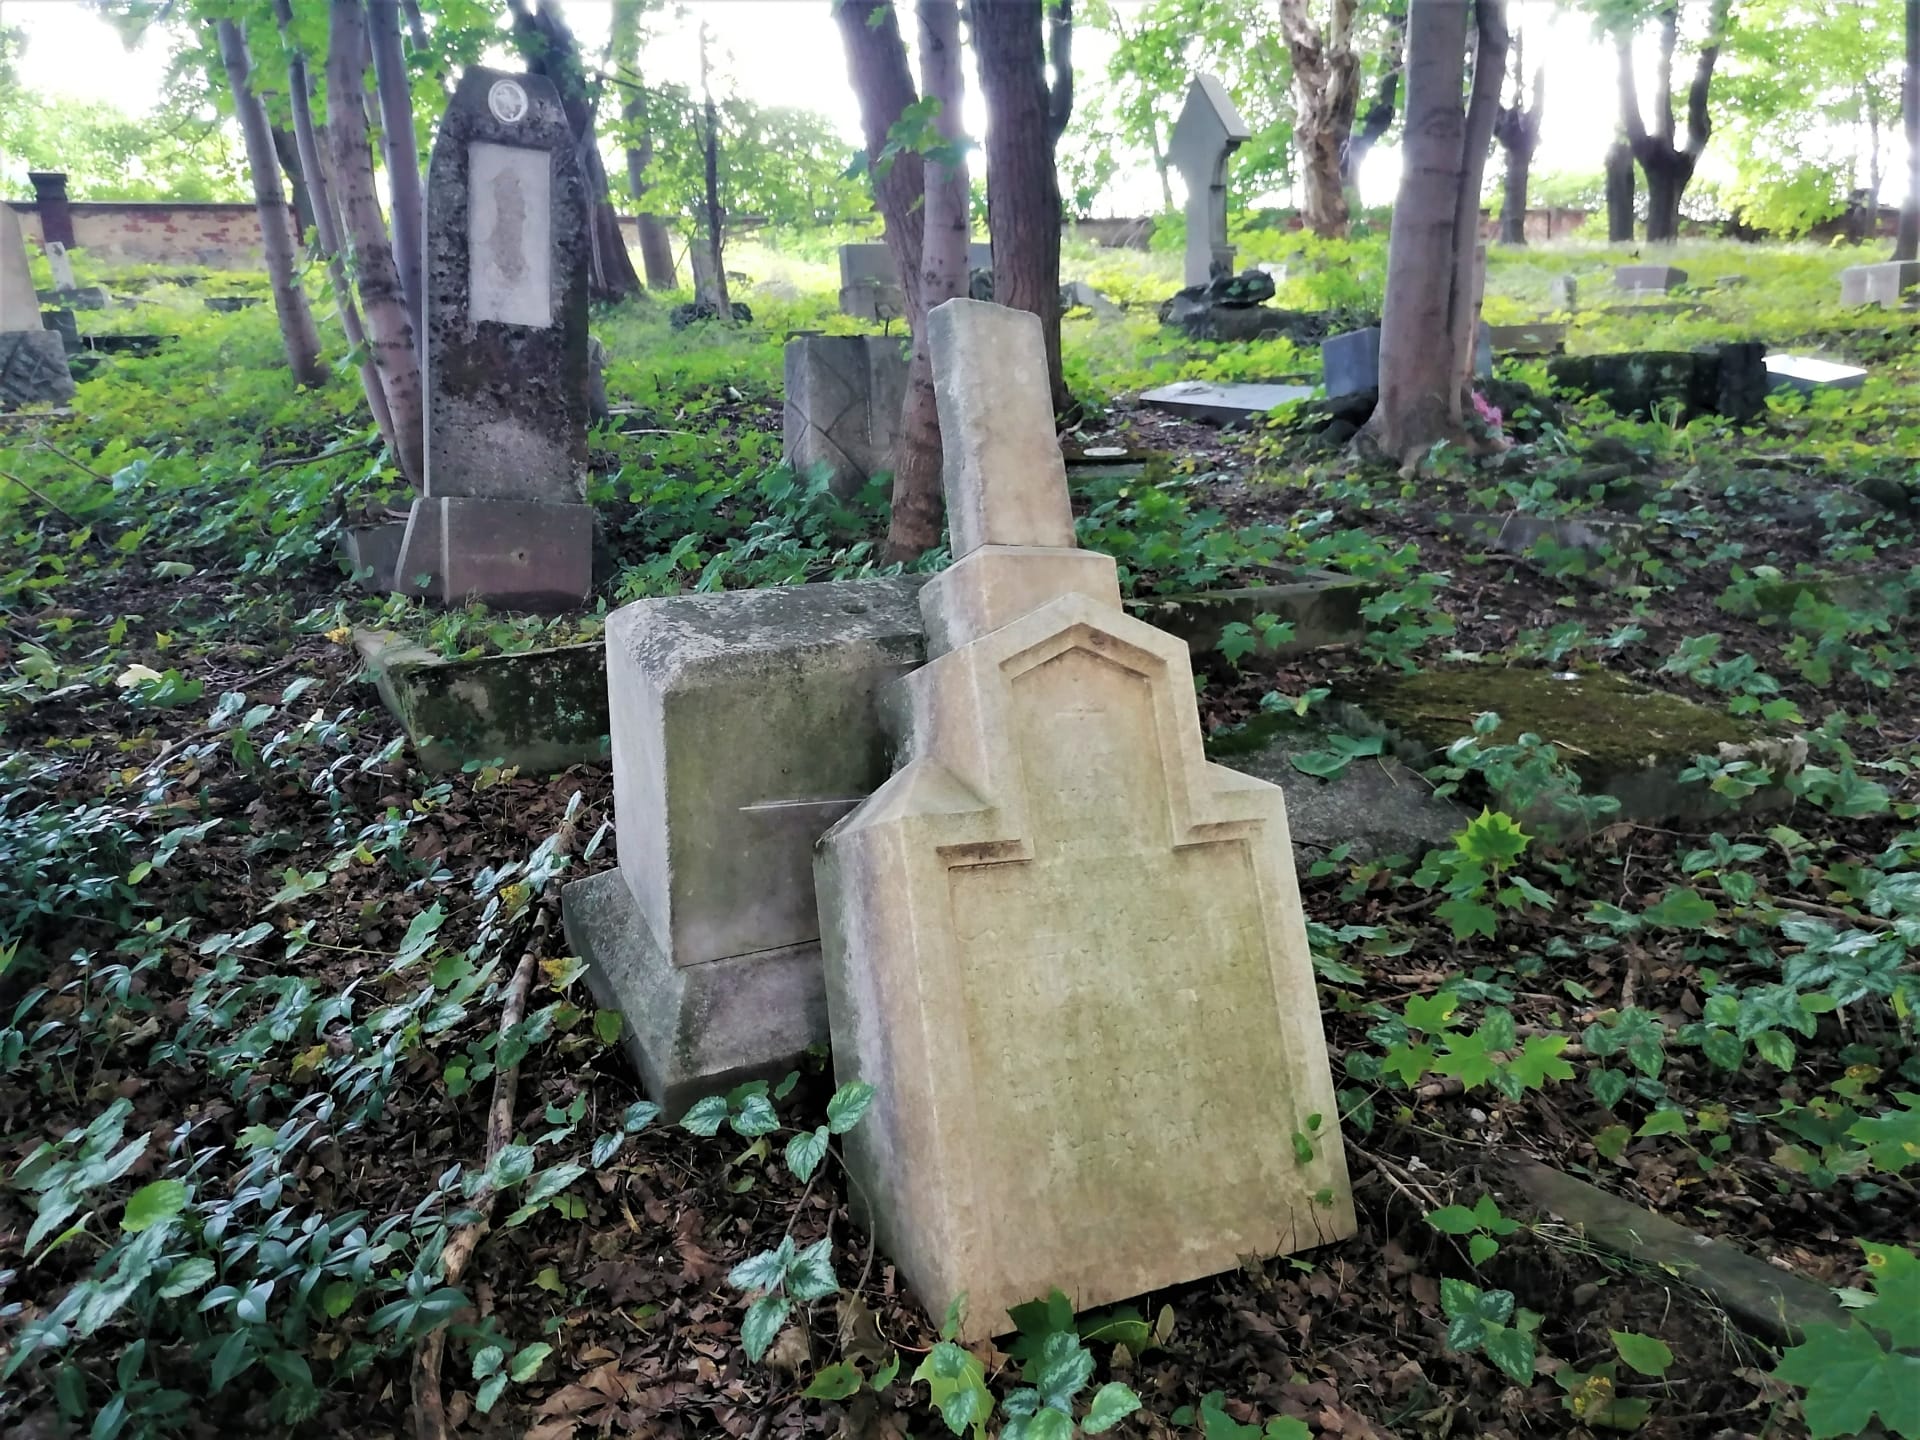 Žalostná stav německého hřbitova v Chomýži. Září 2021